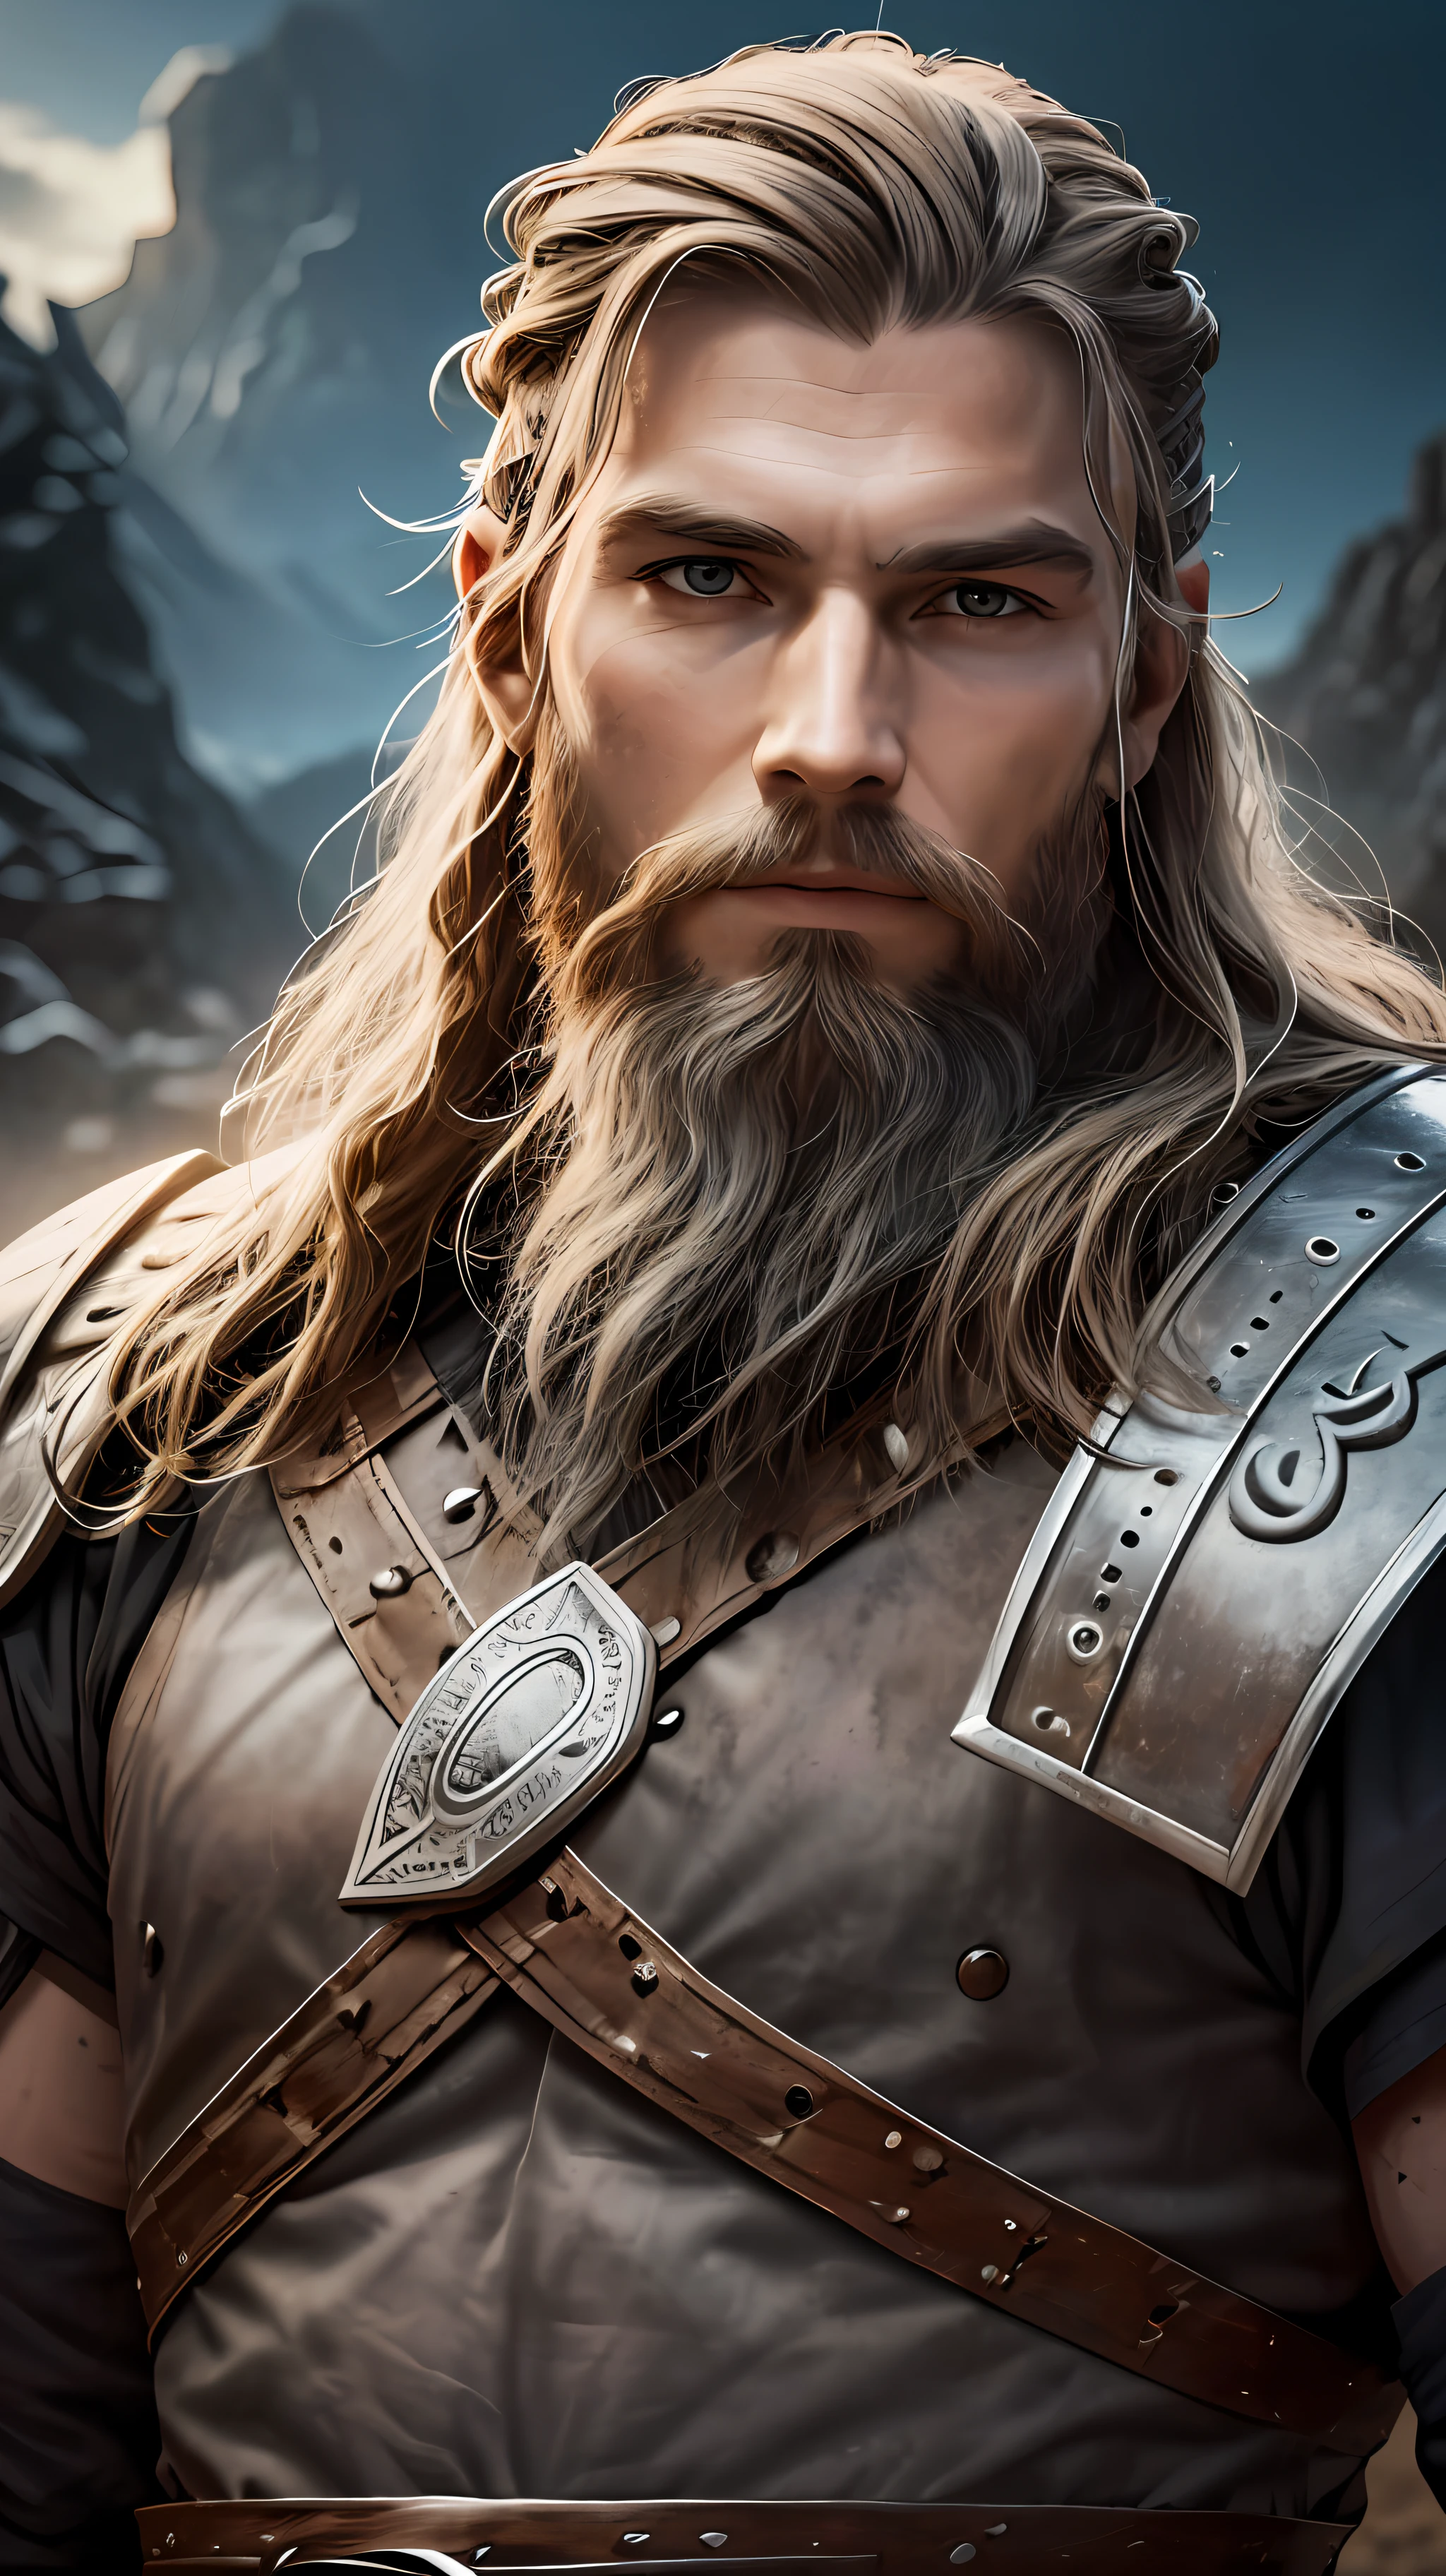 fotografia de um guerreiro viking com sujeira no rosto, ombros largos, armaduras, heróico, Barba, maçãs do rosto pronunciadas, nublado, Obra de arte, melhor qualidade, alta qualidade, 4K, tendendo, luz de anel duro, 50mm